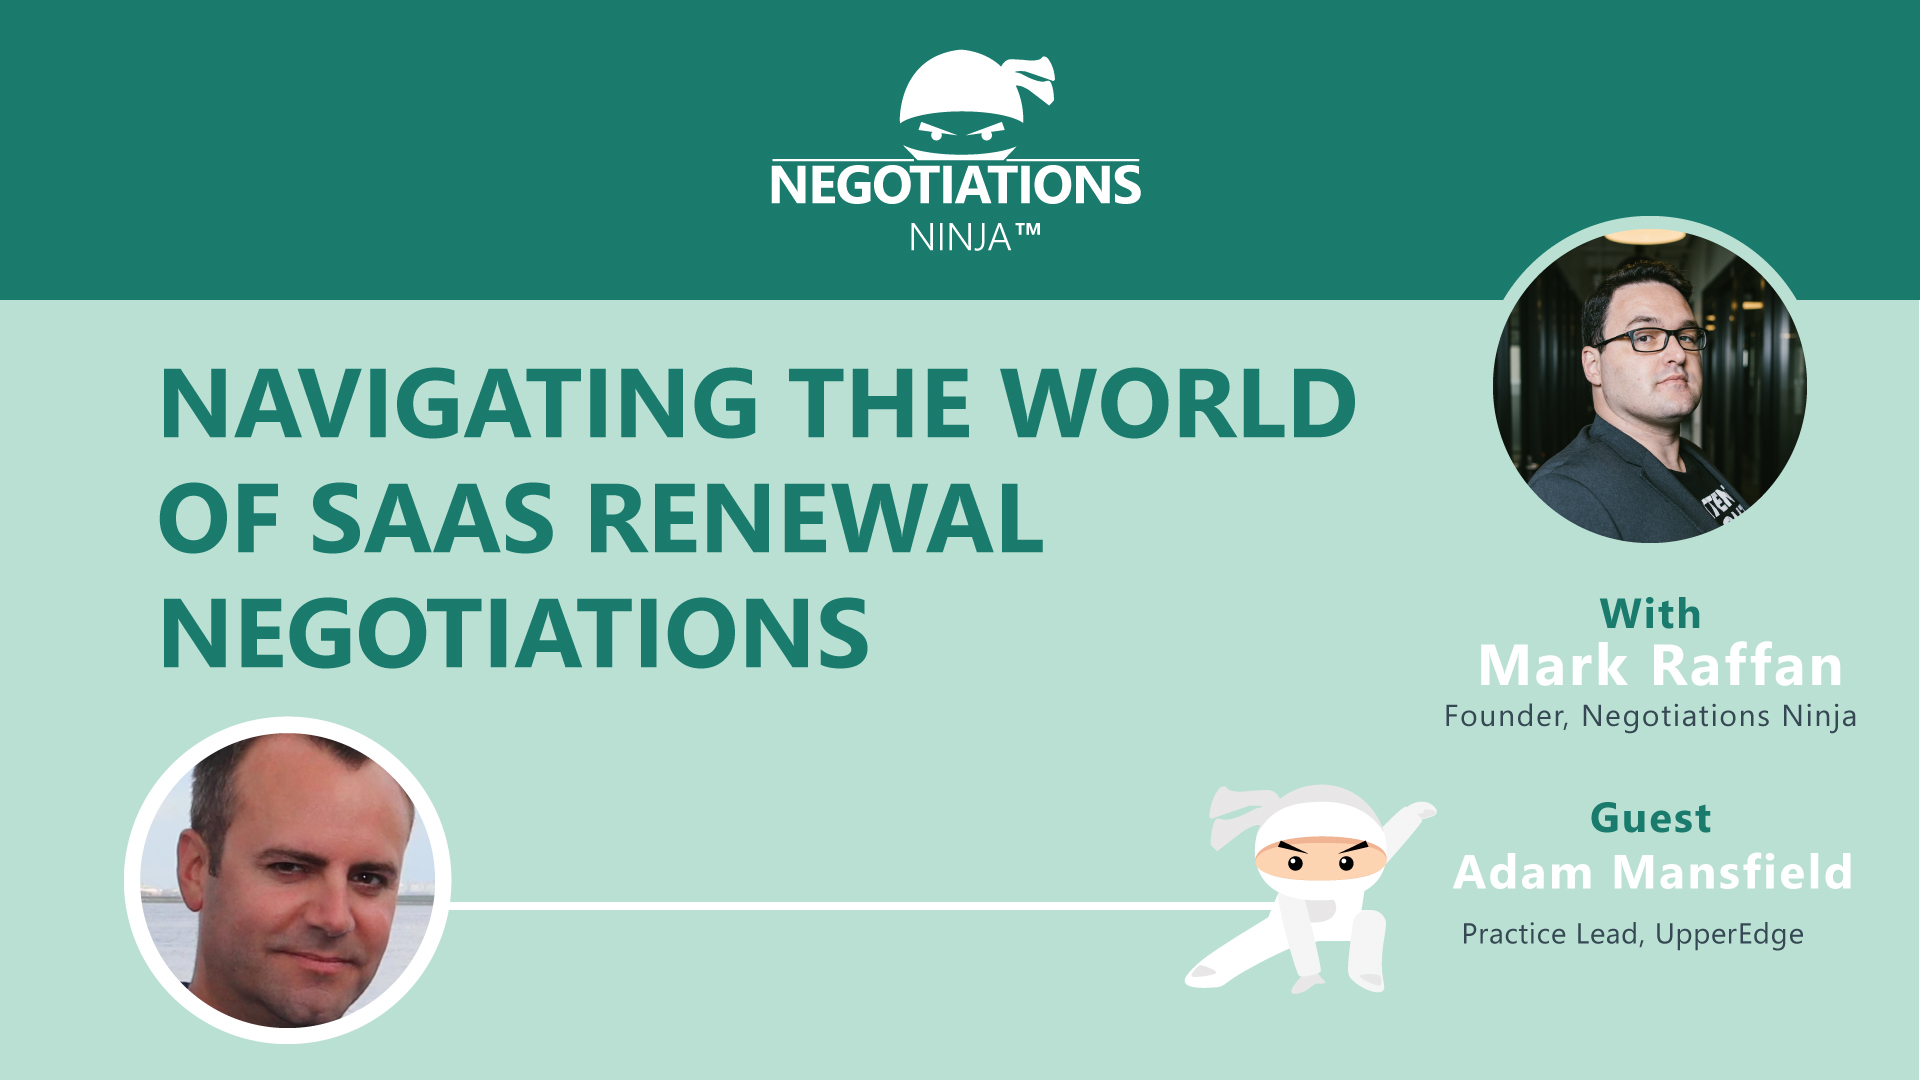 SaaS Renewal Negotiations